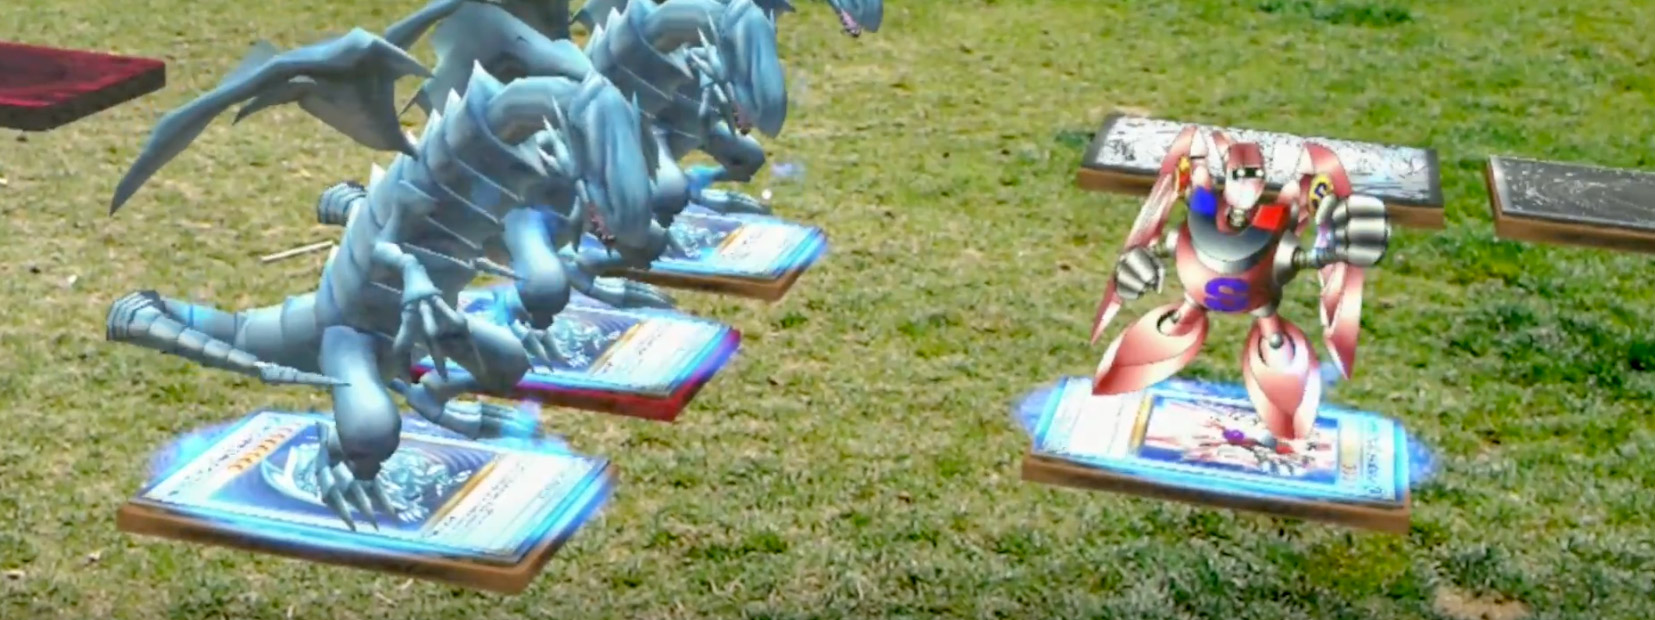 [Video] Đấu bài Yu-Gi-Oh! với quái thú hiện ra trước mặt như phim, tại sao không chứ?